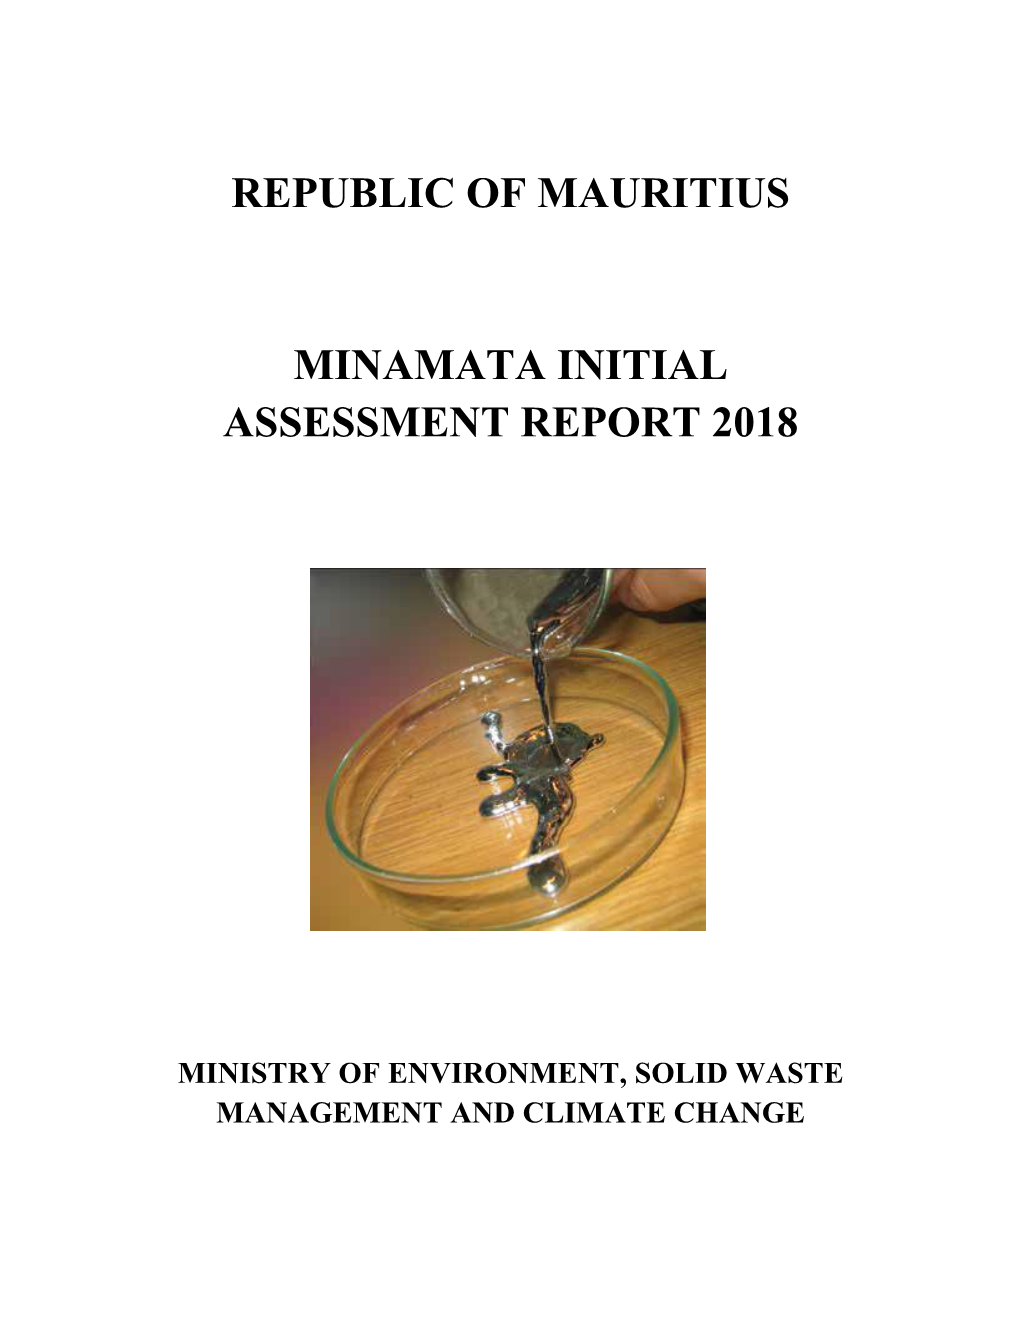 Republic of Mauritius Minamata Initial Assessment